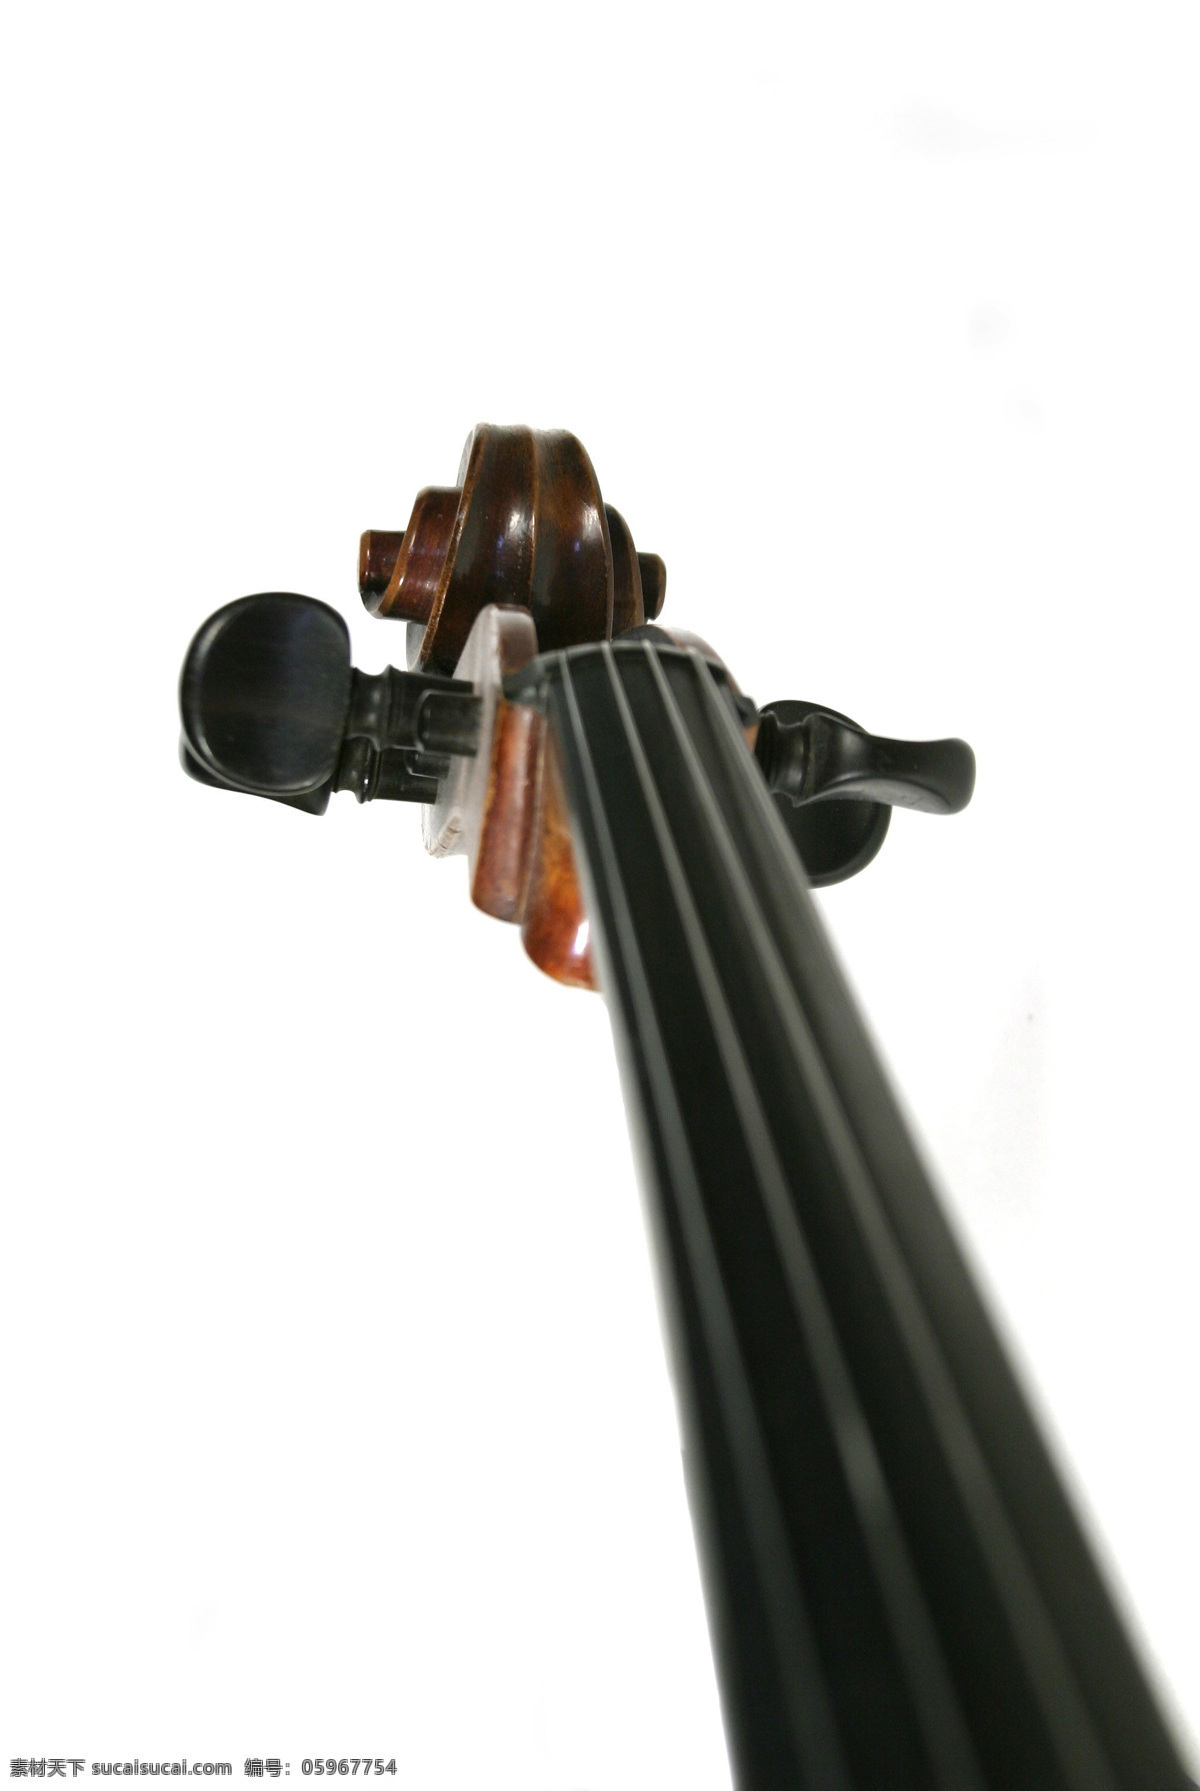 腮托 音乐 艺术 乐器 弦乐器 小提琴 文化艺术 舞蹈音乐 摄影图库